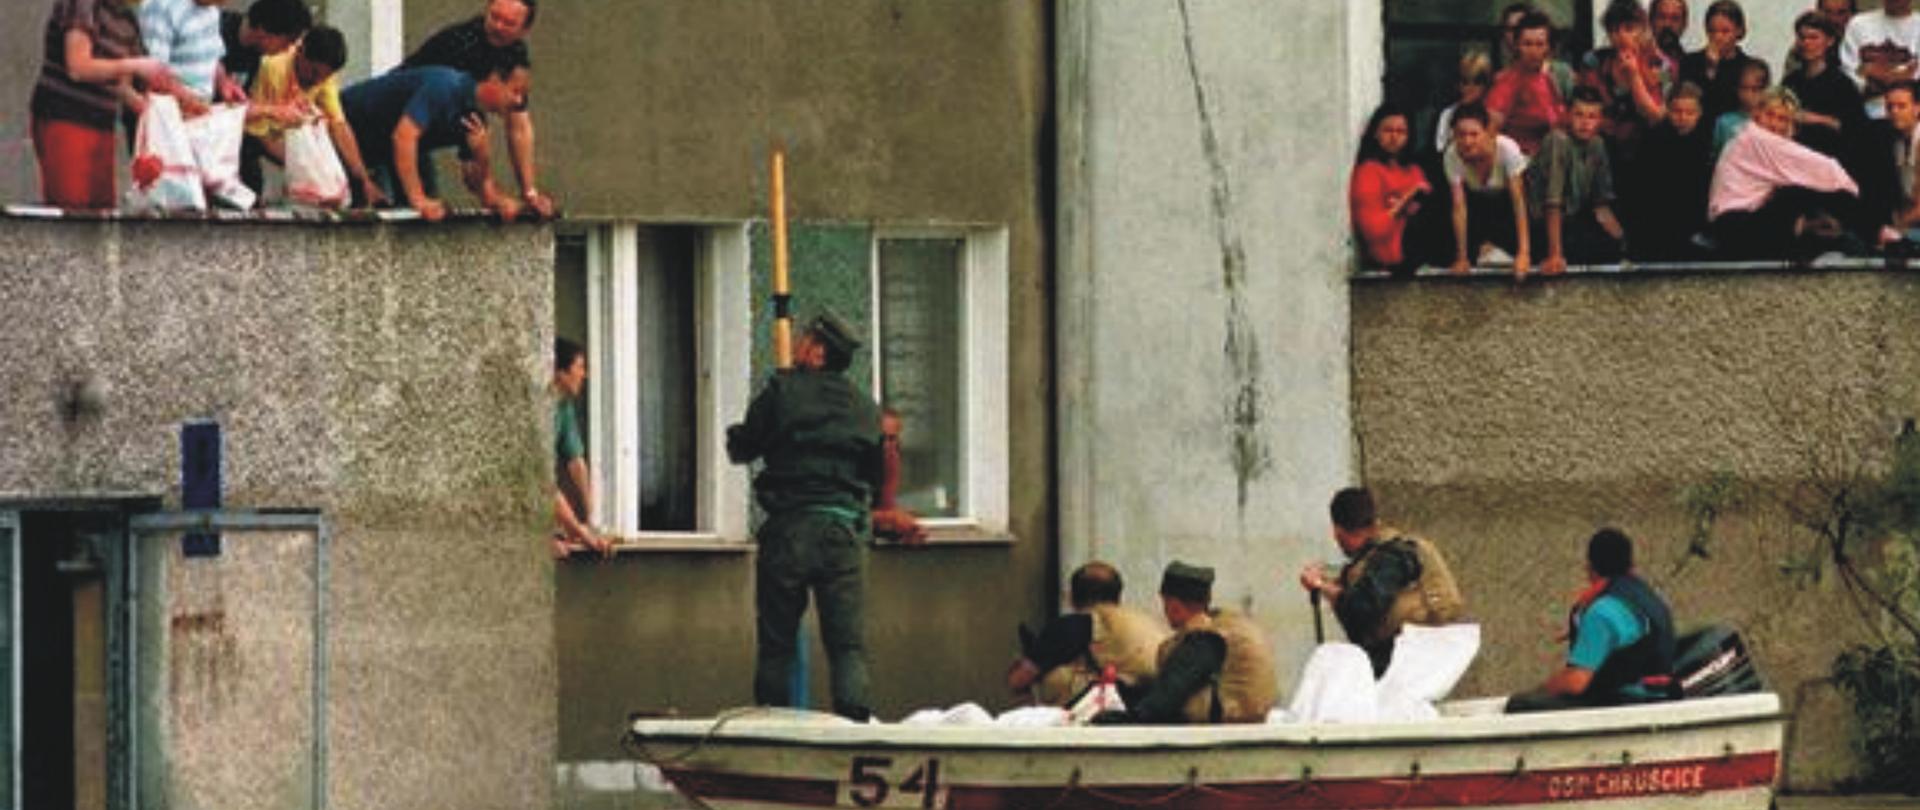 Na zdjęciu widać jak strażacy w łódce dostarczają żywność do mieszkańców przebywających w zalanych domach